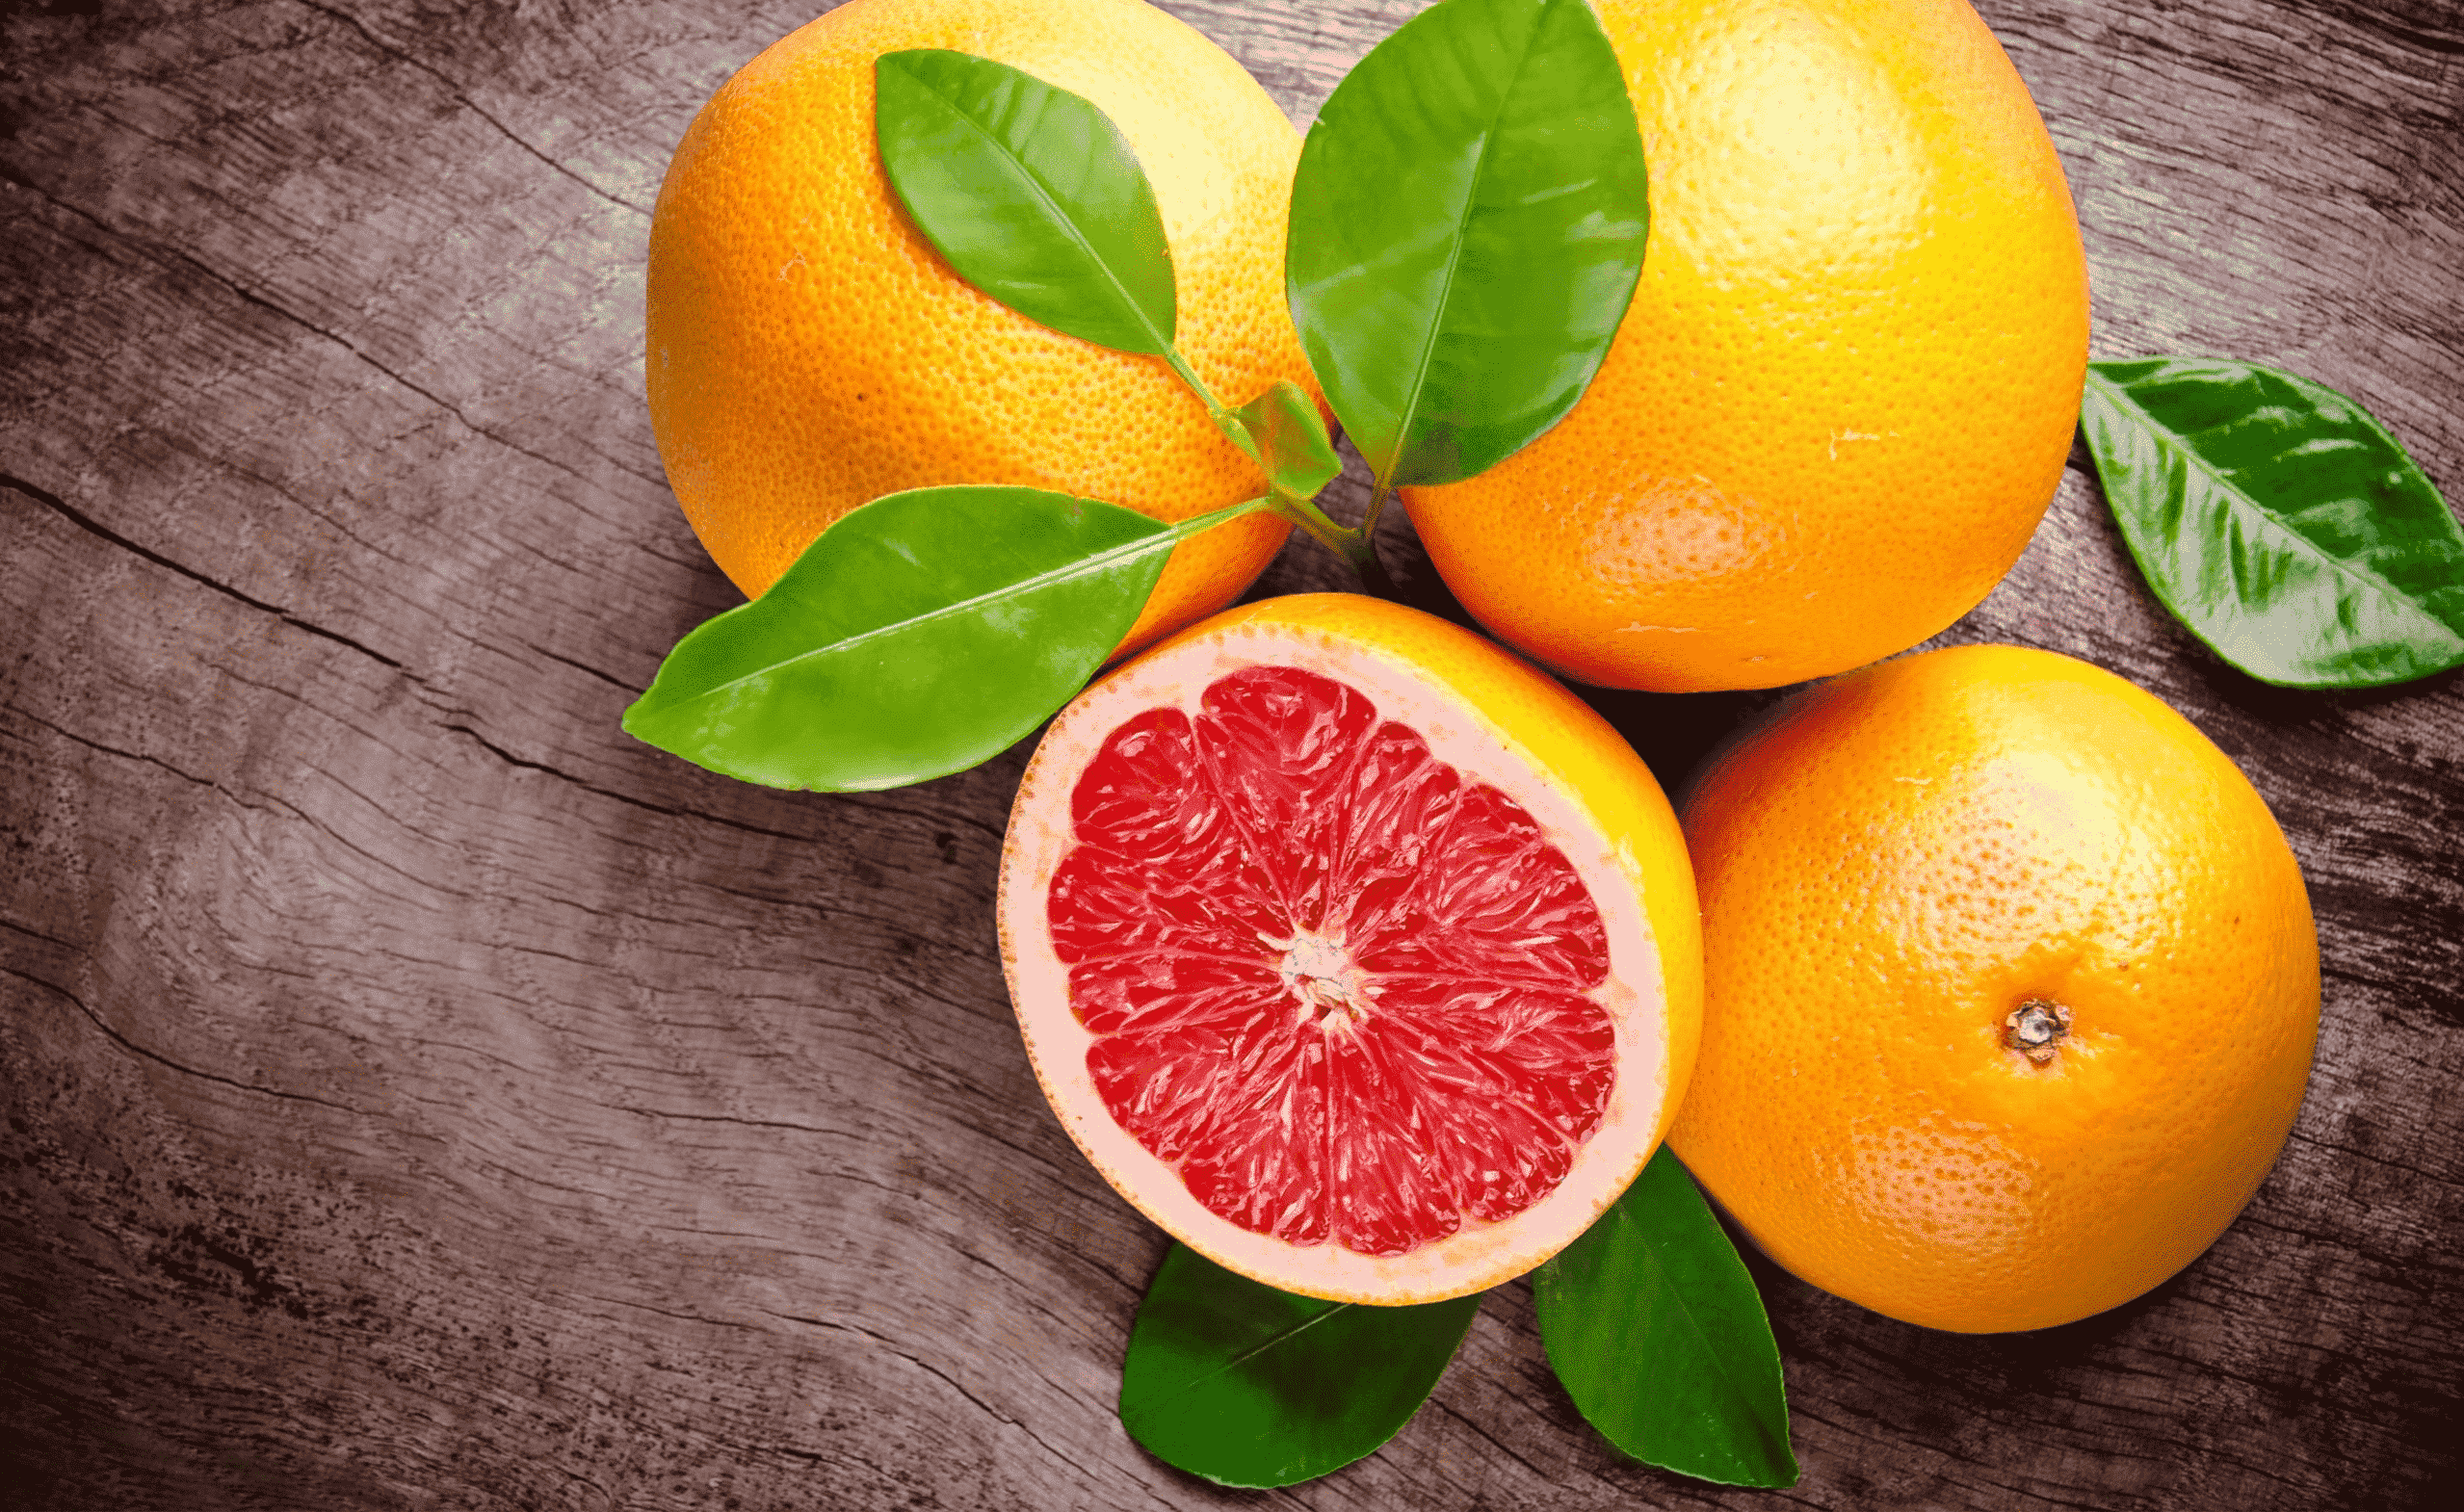 Honeybell Oranges | Crockett Farms